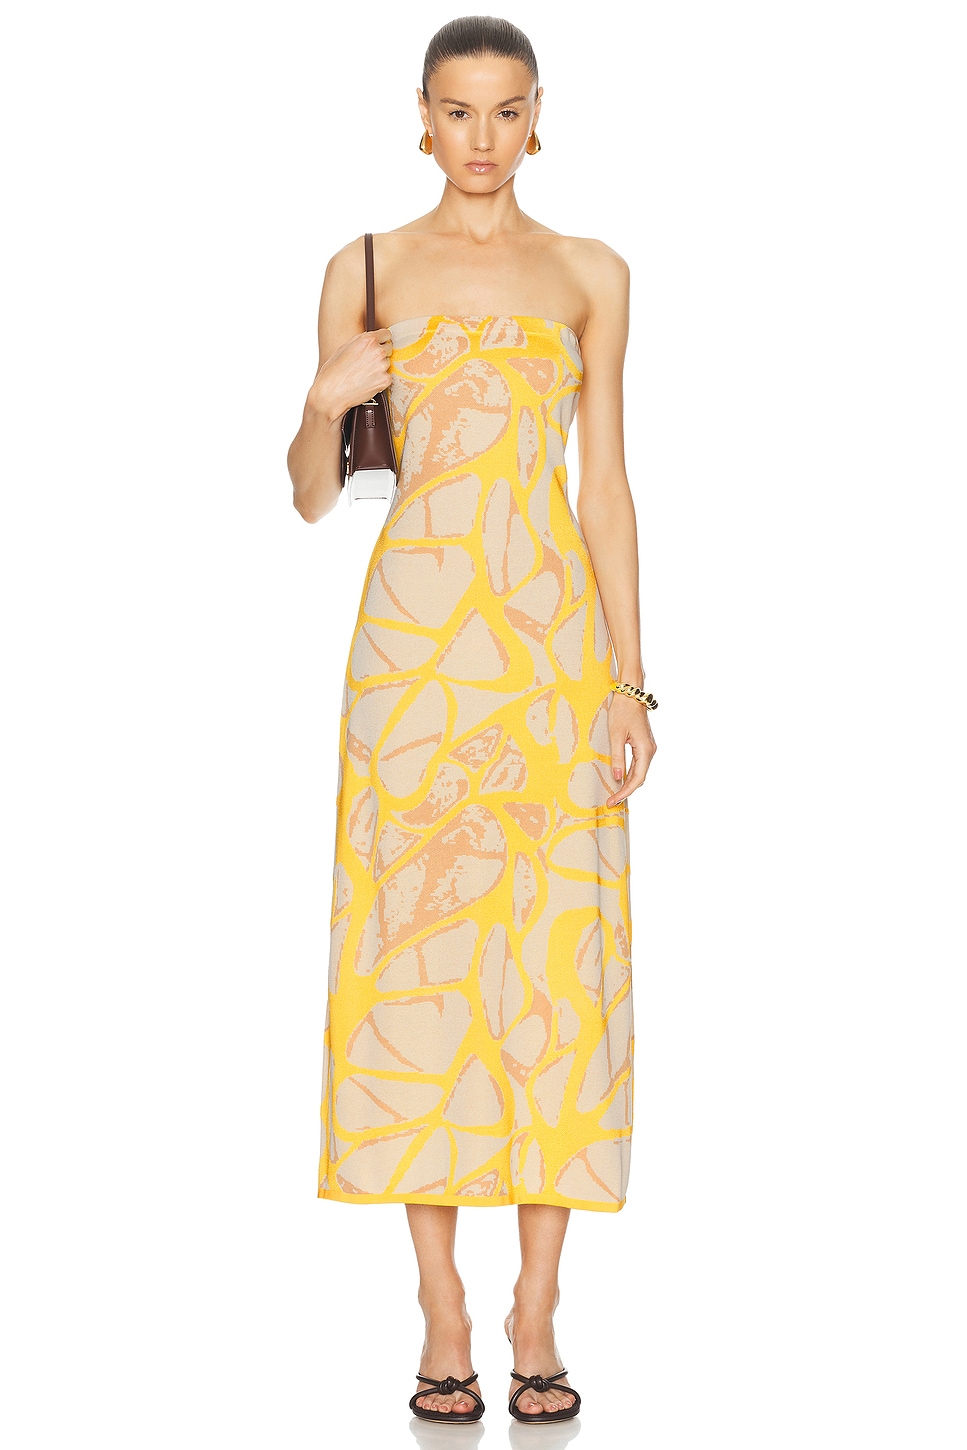 Pollie Dress in Lemon